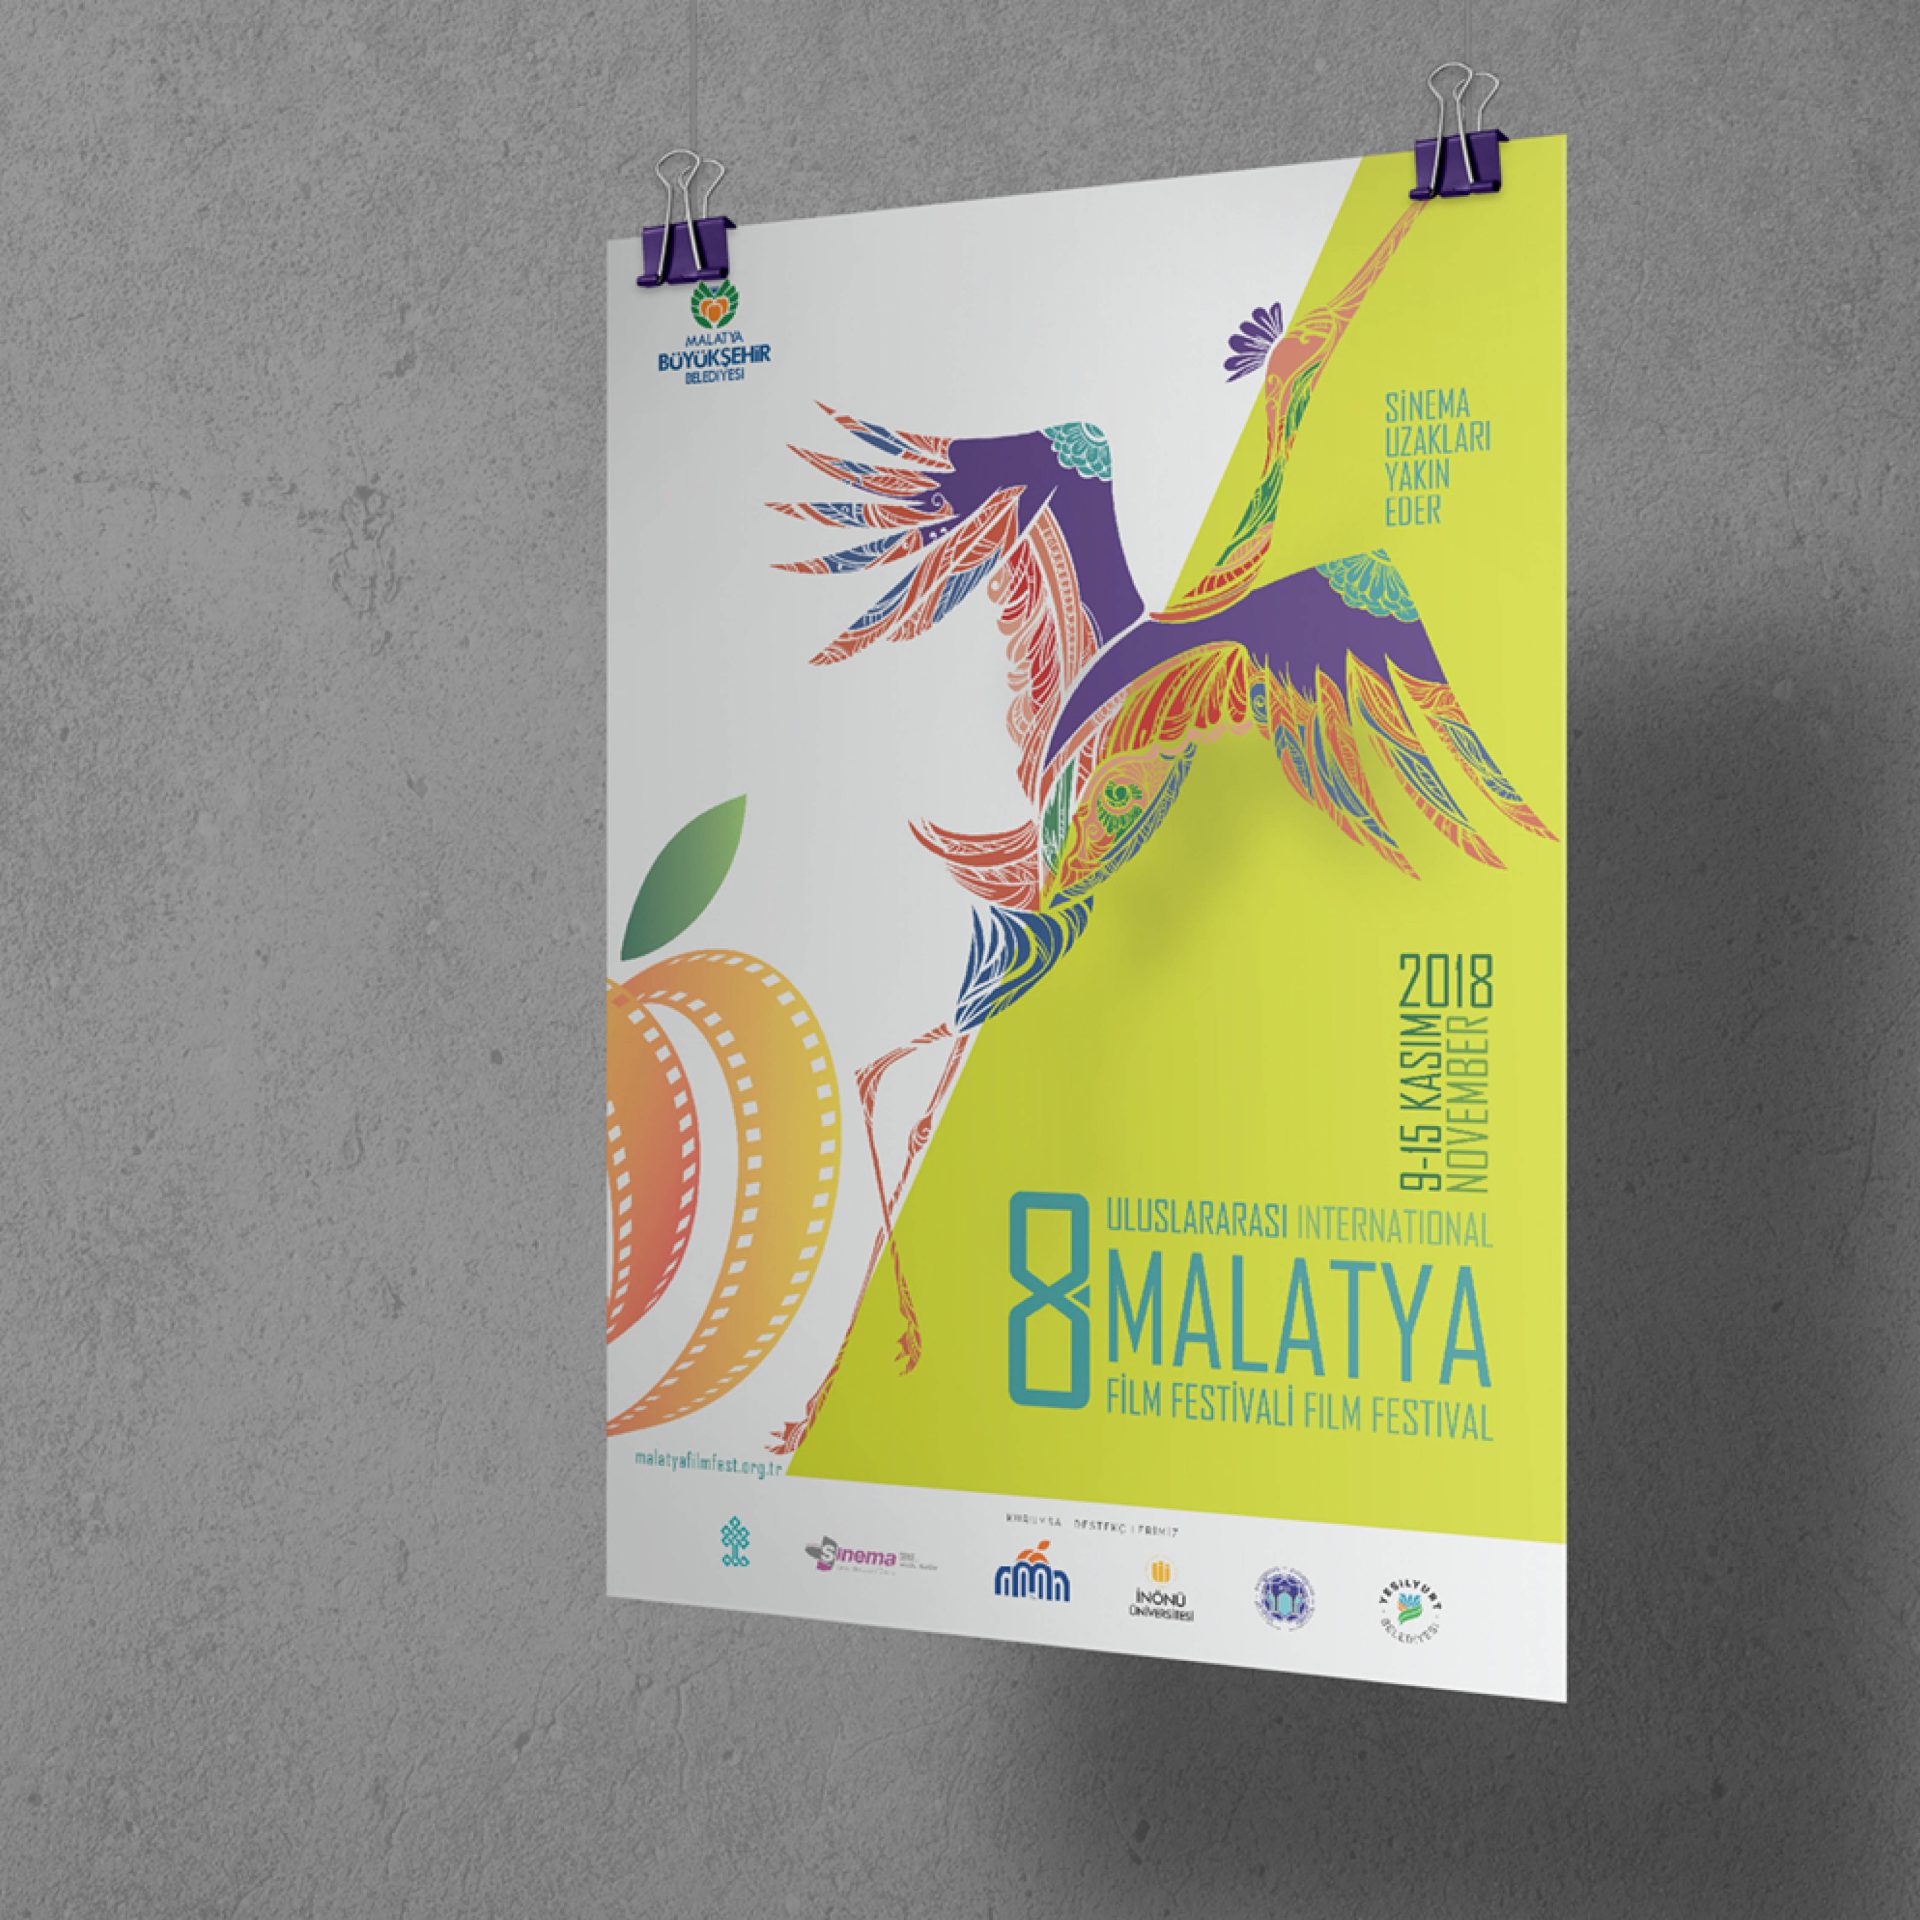 International 8th Malatya Film Festival